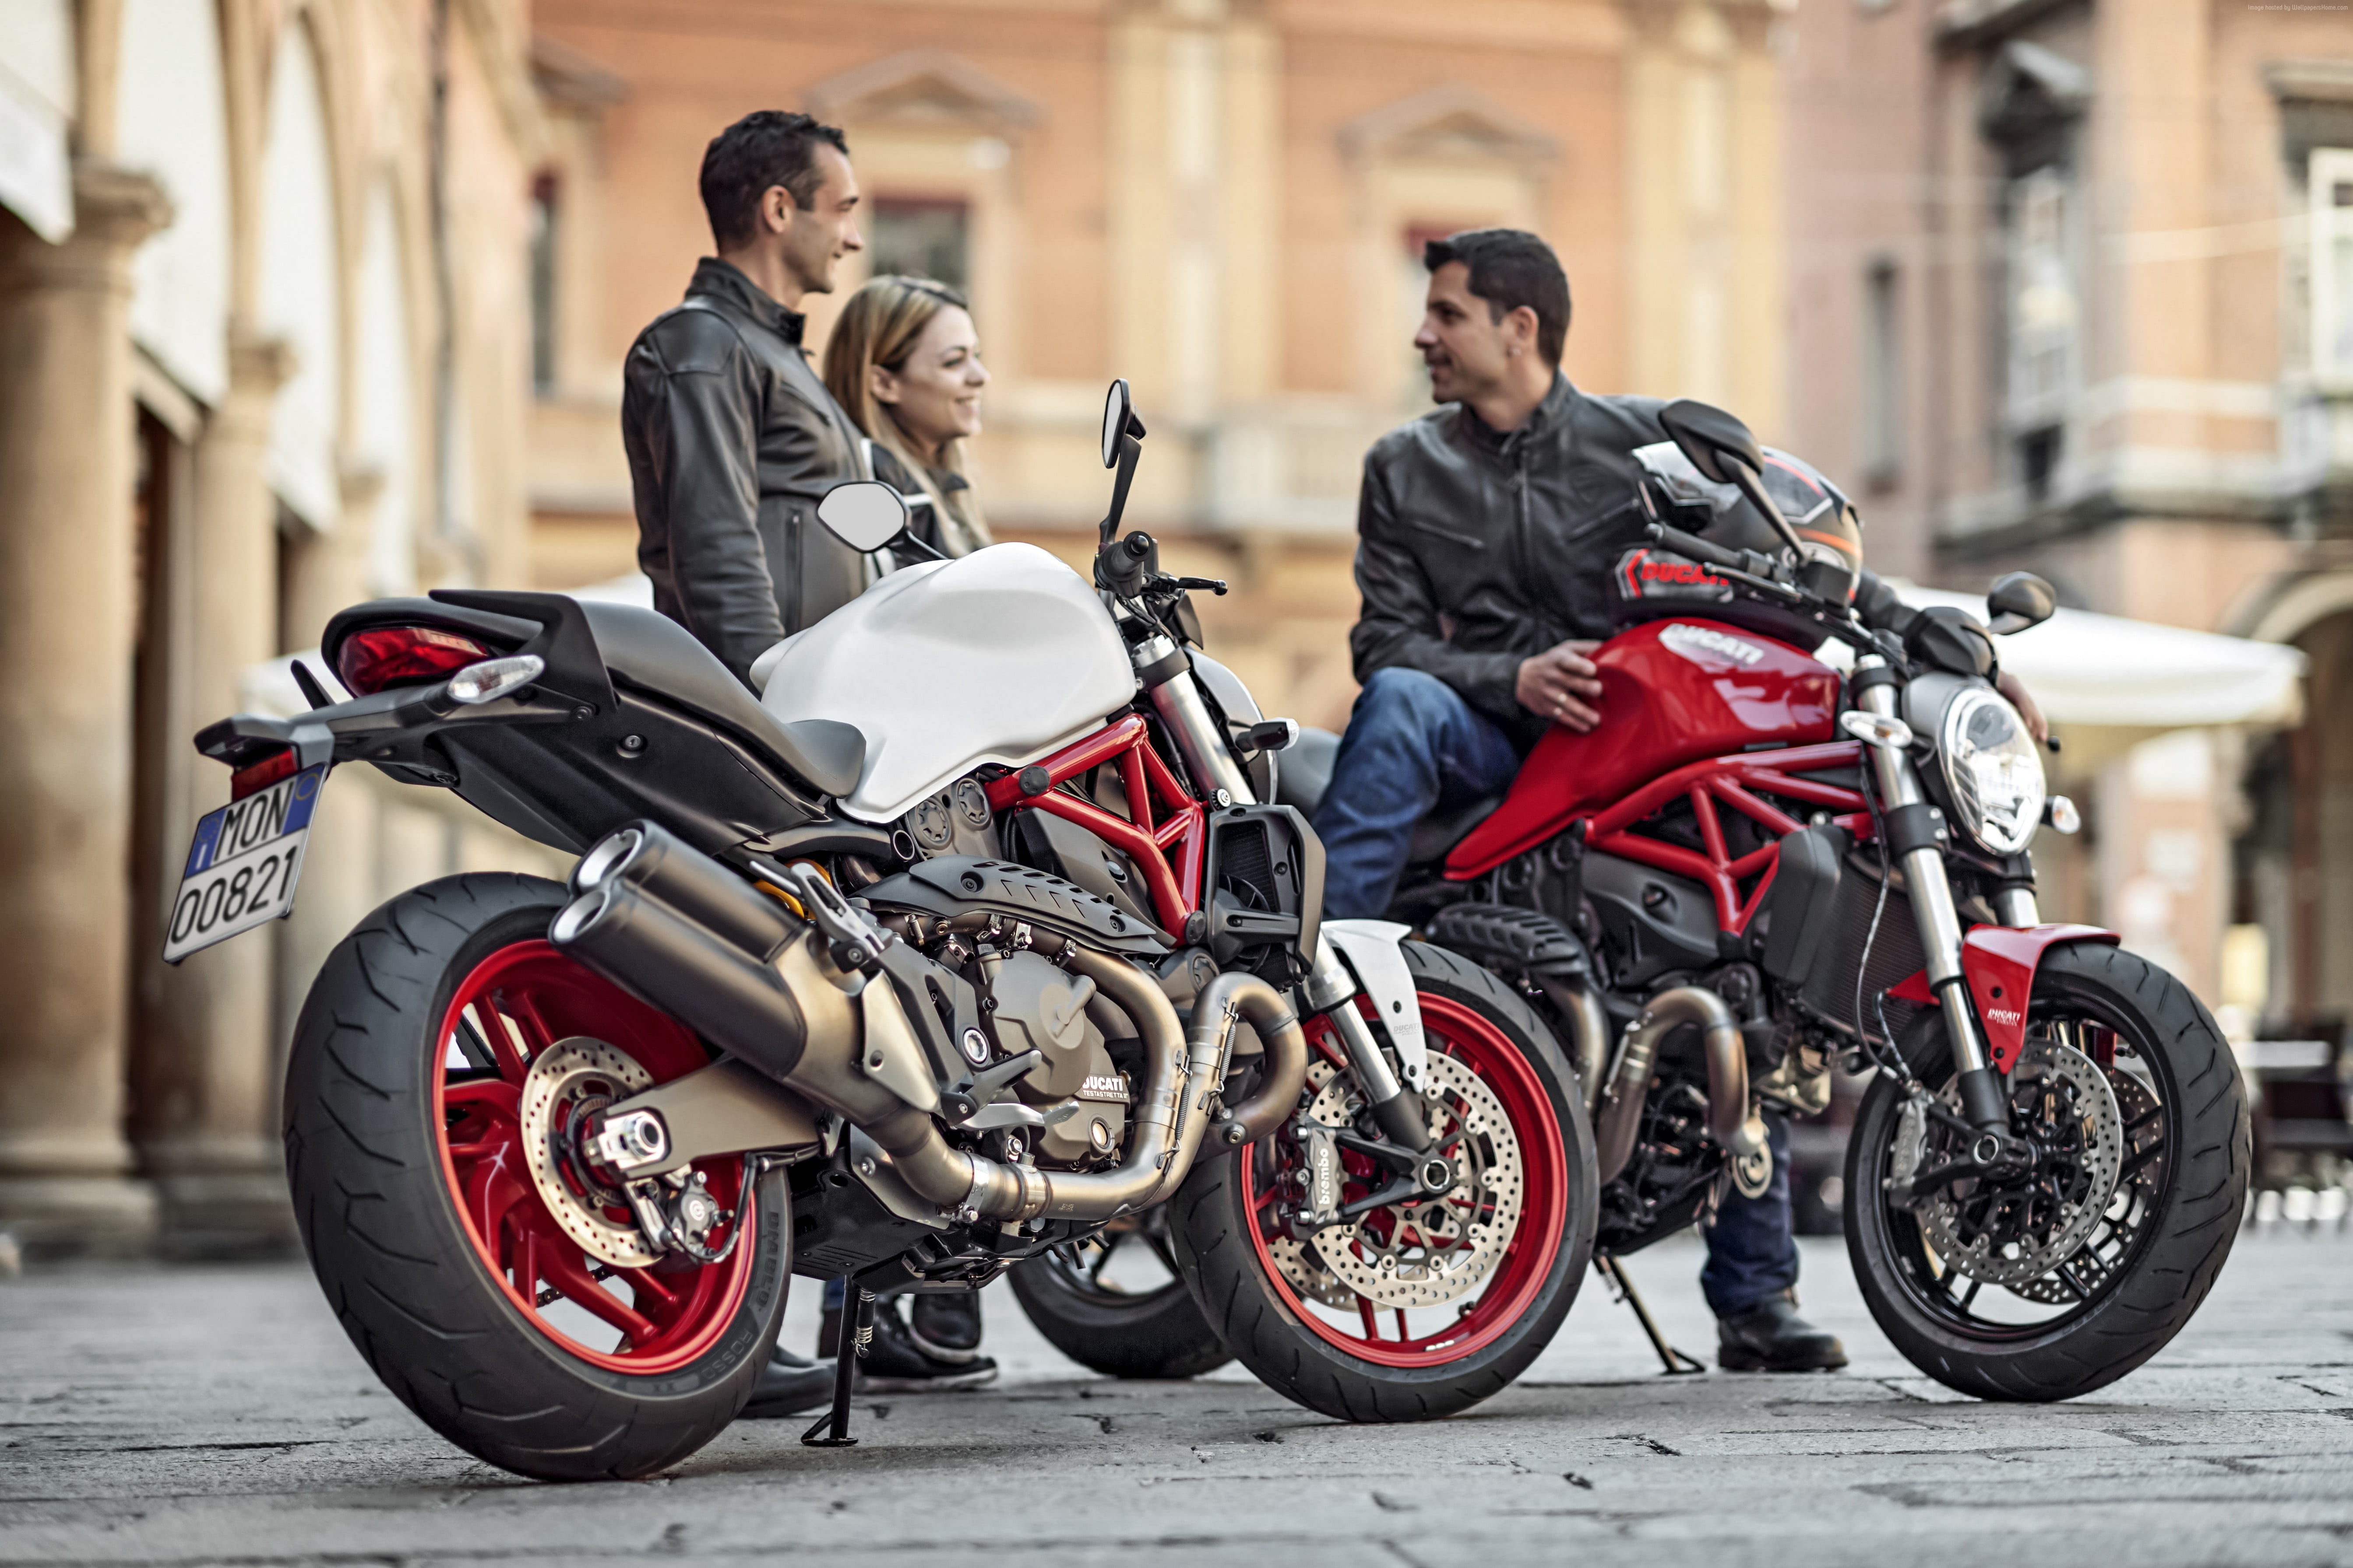 Городские байки. Дукати 821. Итальянский мотоцикл Дукати. Ducati городской мотоцикл. Ducati Monster 821 2020.